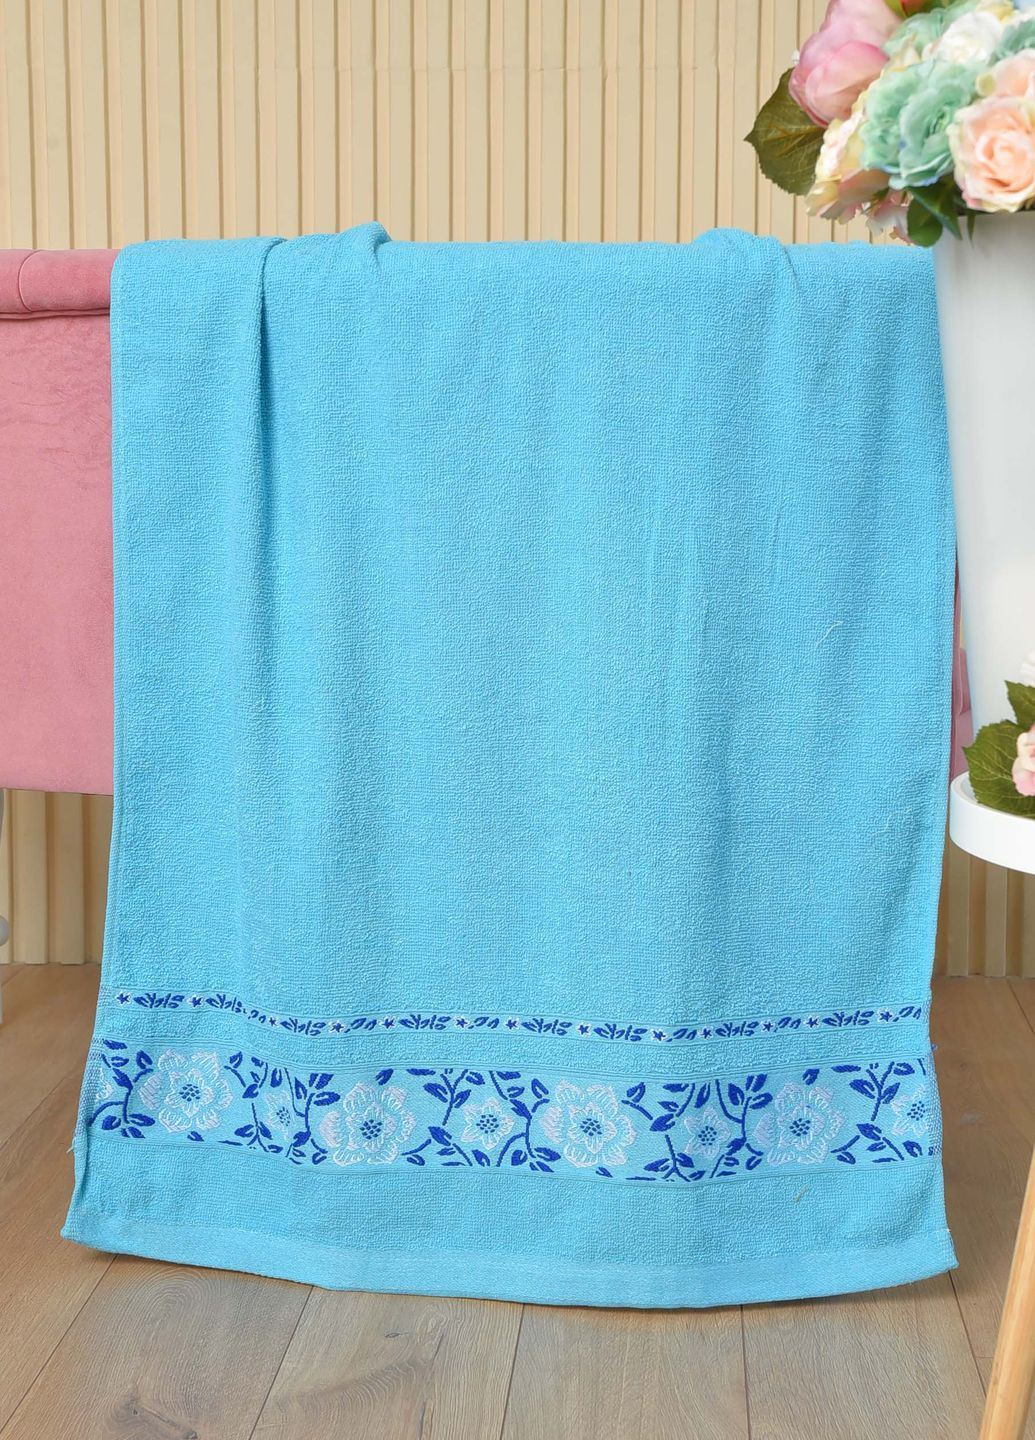 Let's Shop полотенце банное махровое голубого цвета однотонный голубой производство - Турция